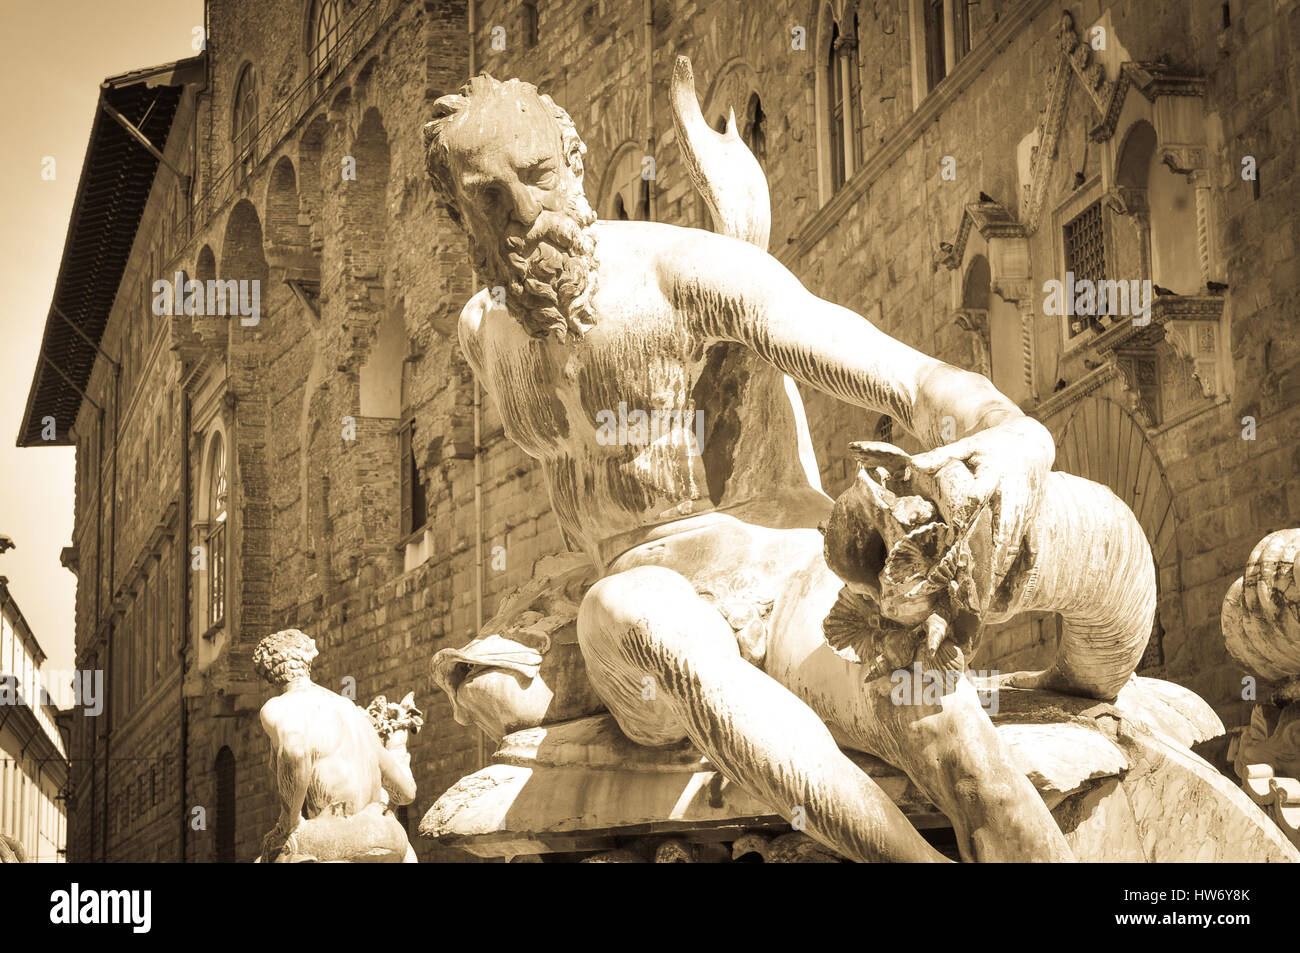 Détail architectural de statues de bronze de la fontaine de Neptune de la Piazza della Signoria (Florence, Italie) Banque D'Images